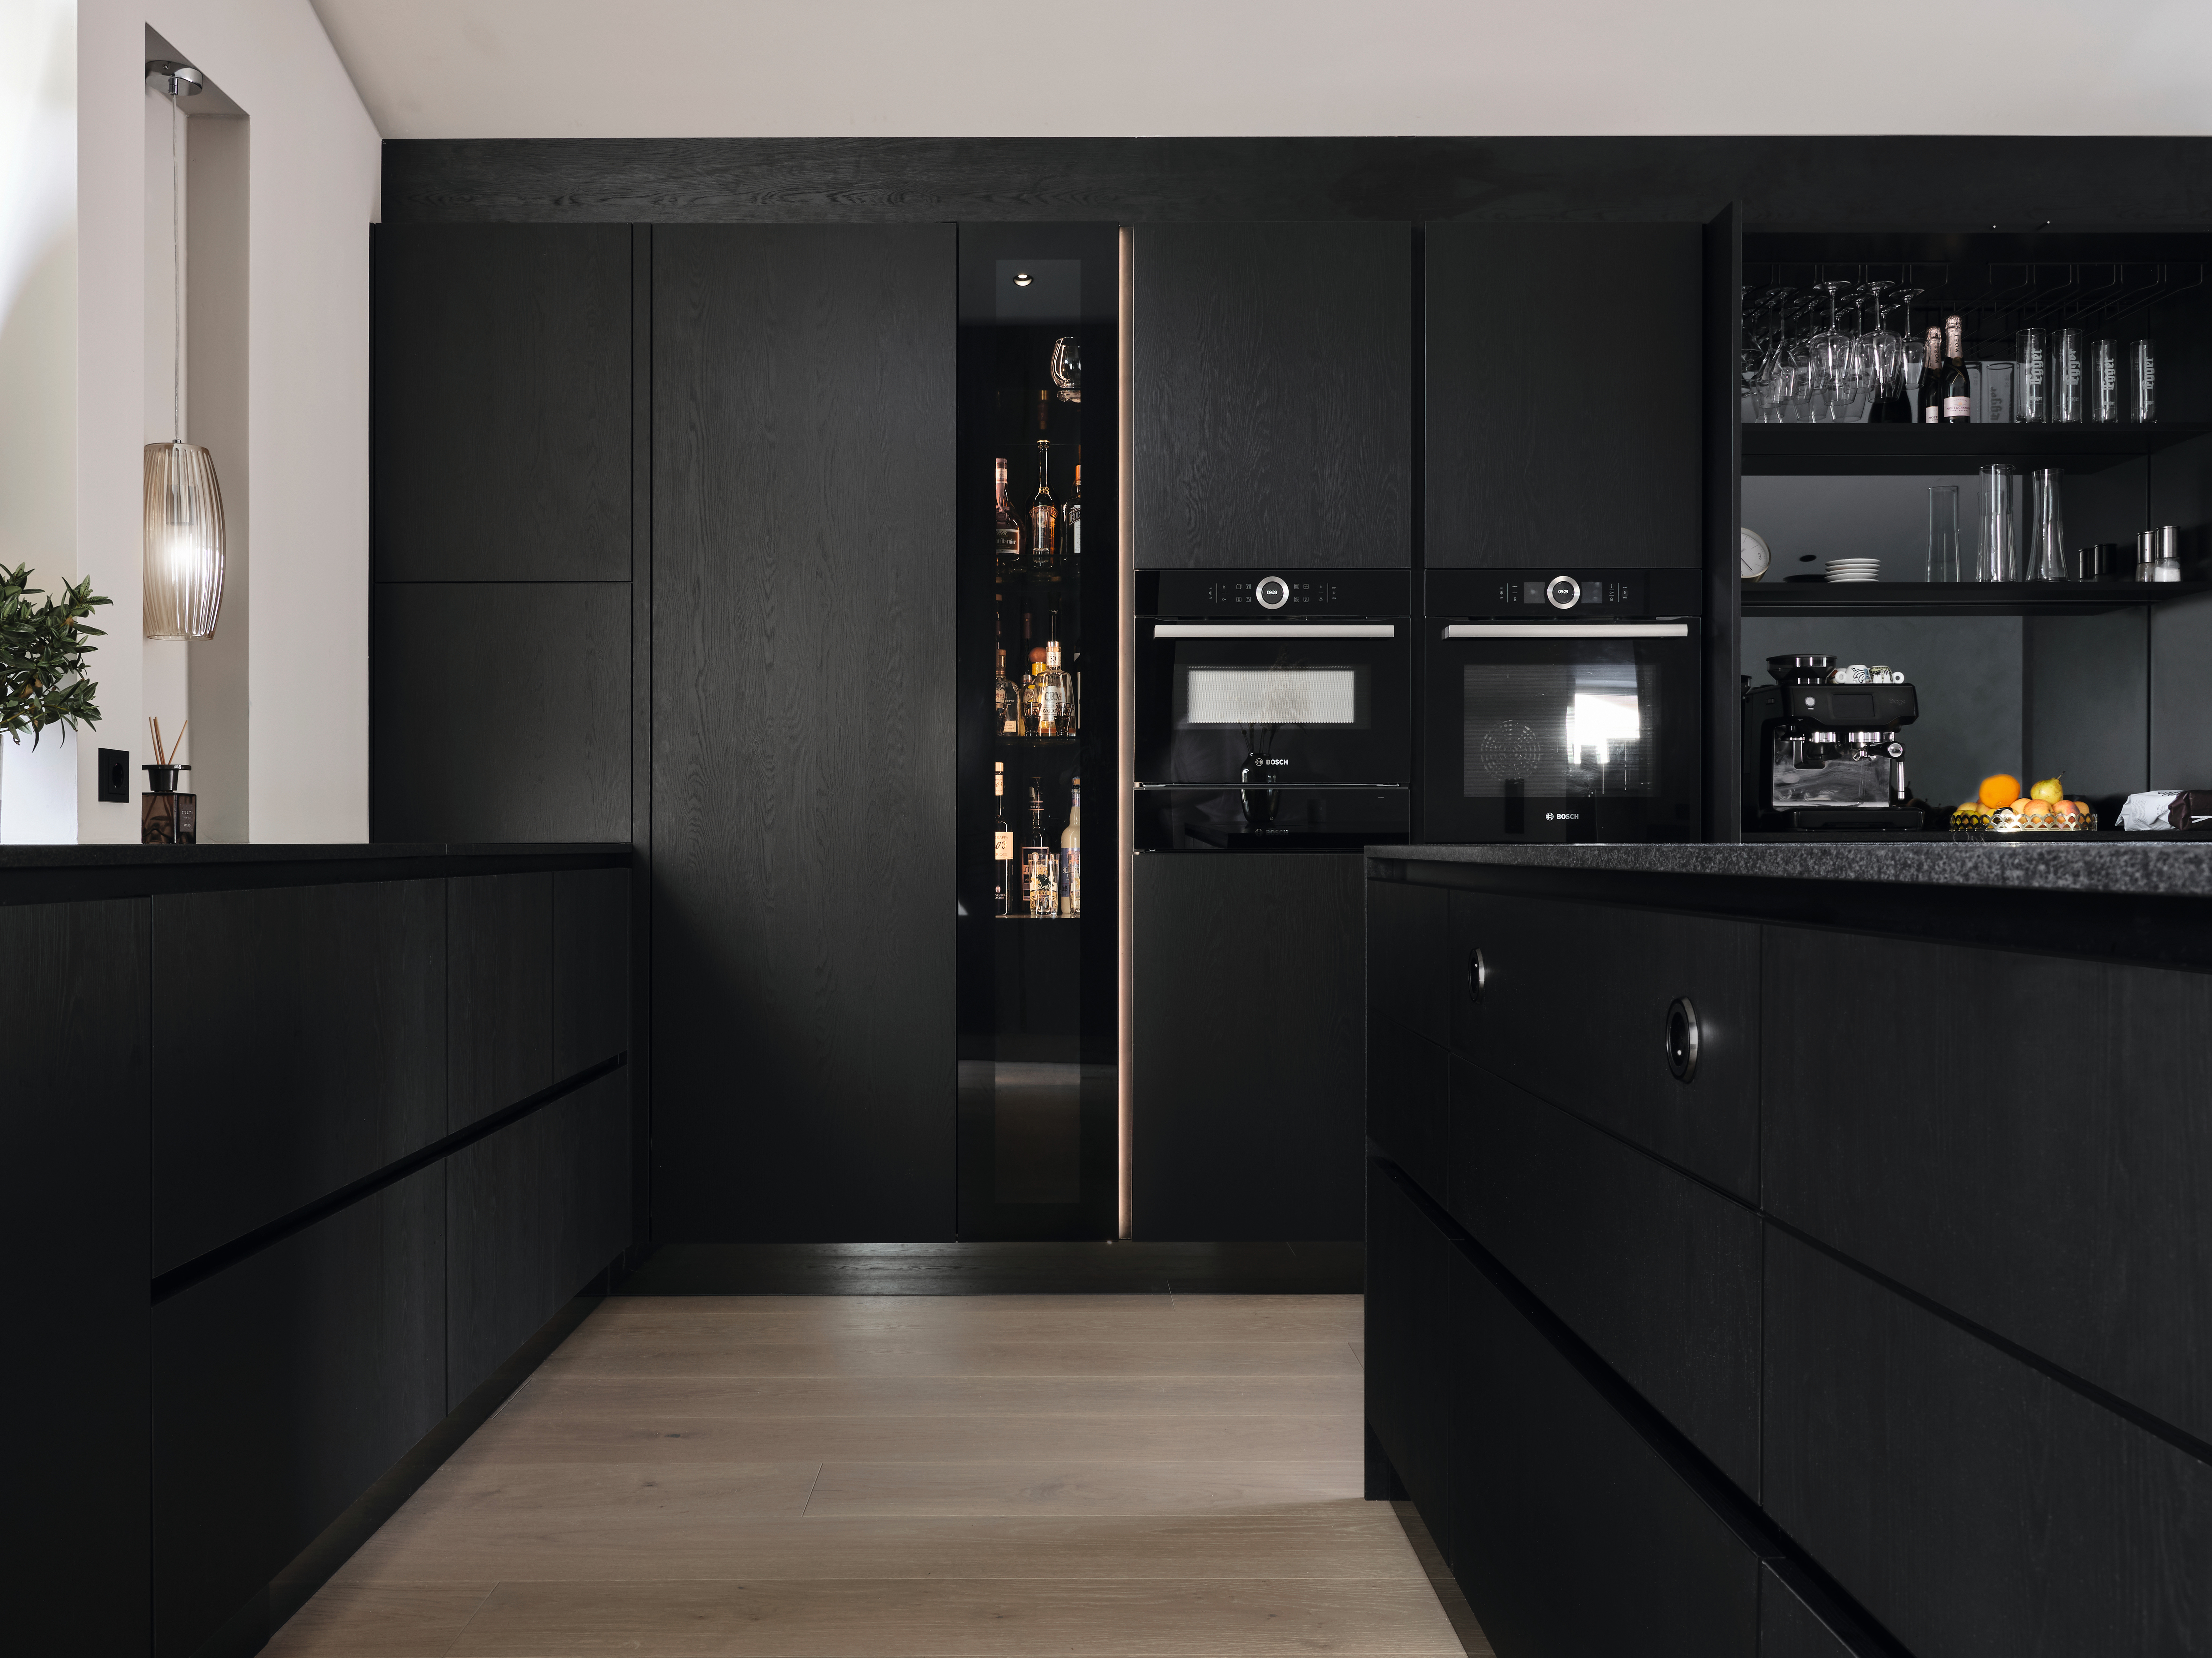 A PerfectSense Feelwood U999 TM28 Fekete dekor különösen alacsony fényvisszaverő hatása természetes megjelenésű eleganciát kölcsönöz ennek a konyhának.